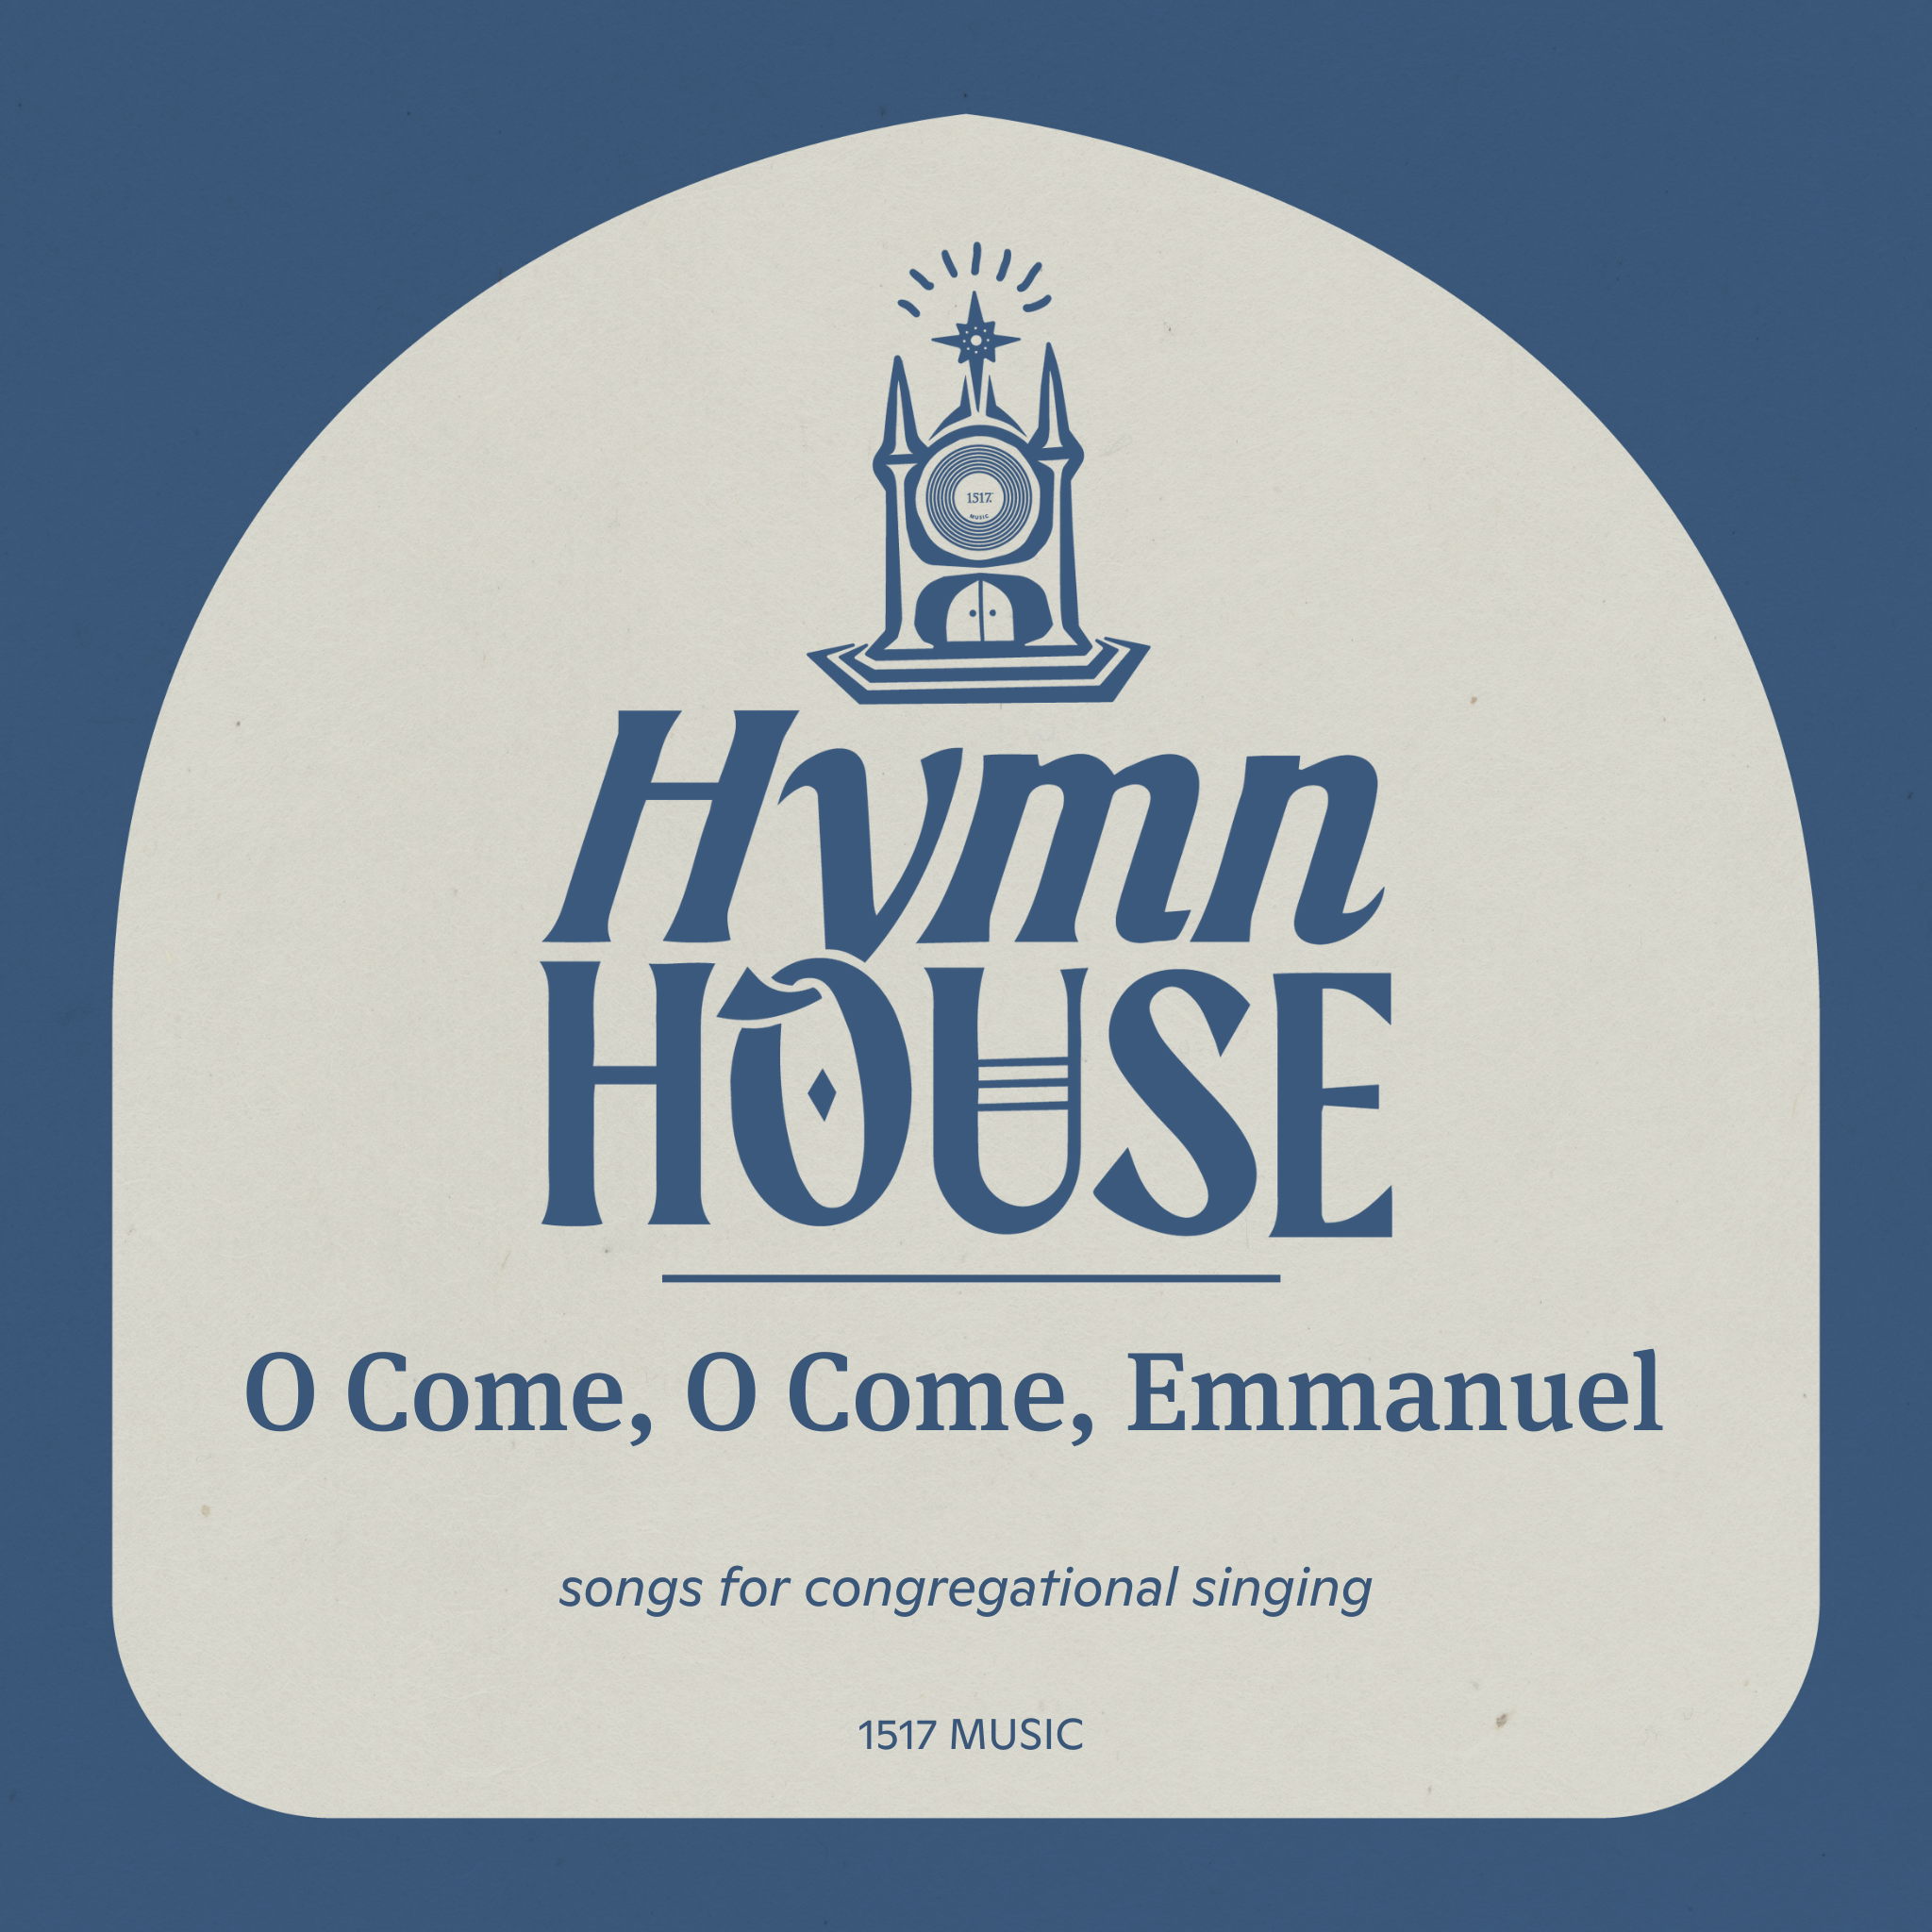 O Come, O Come, Emmanuel (Hymn House)